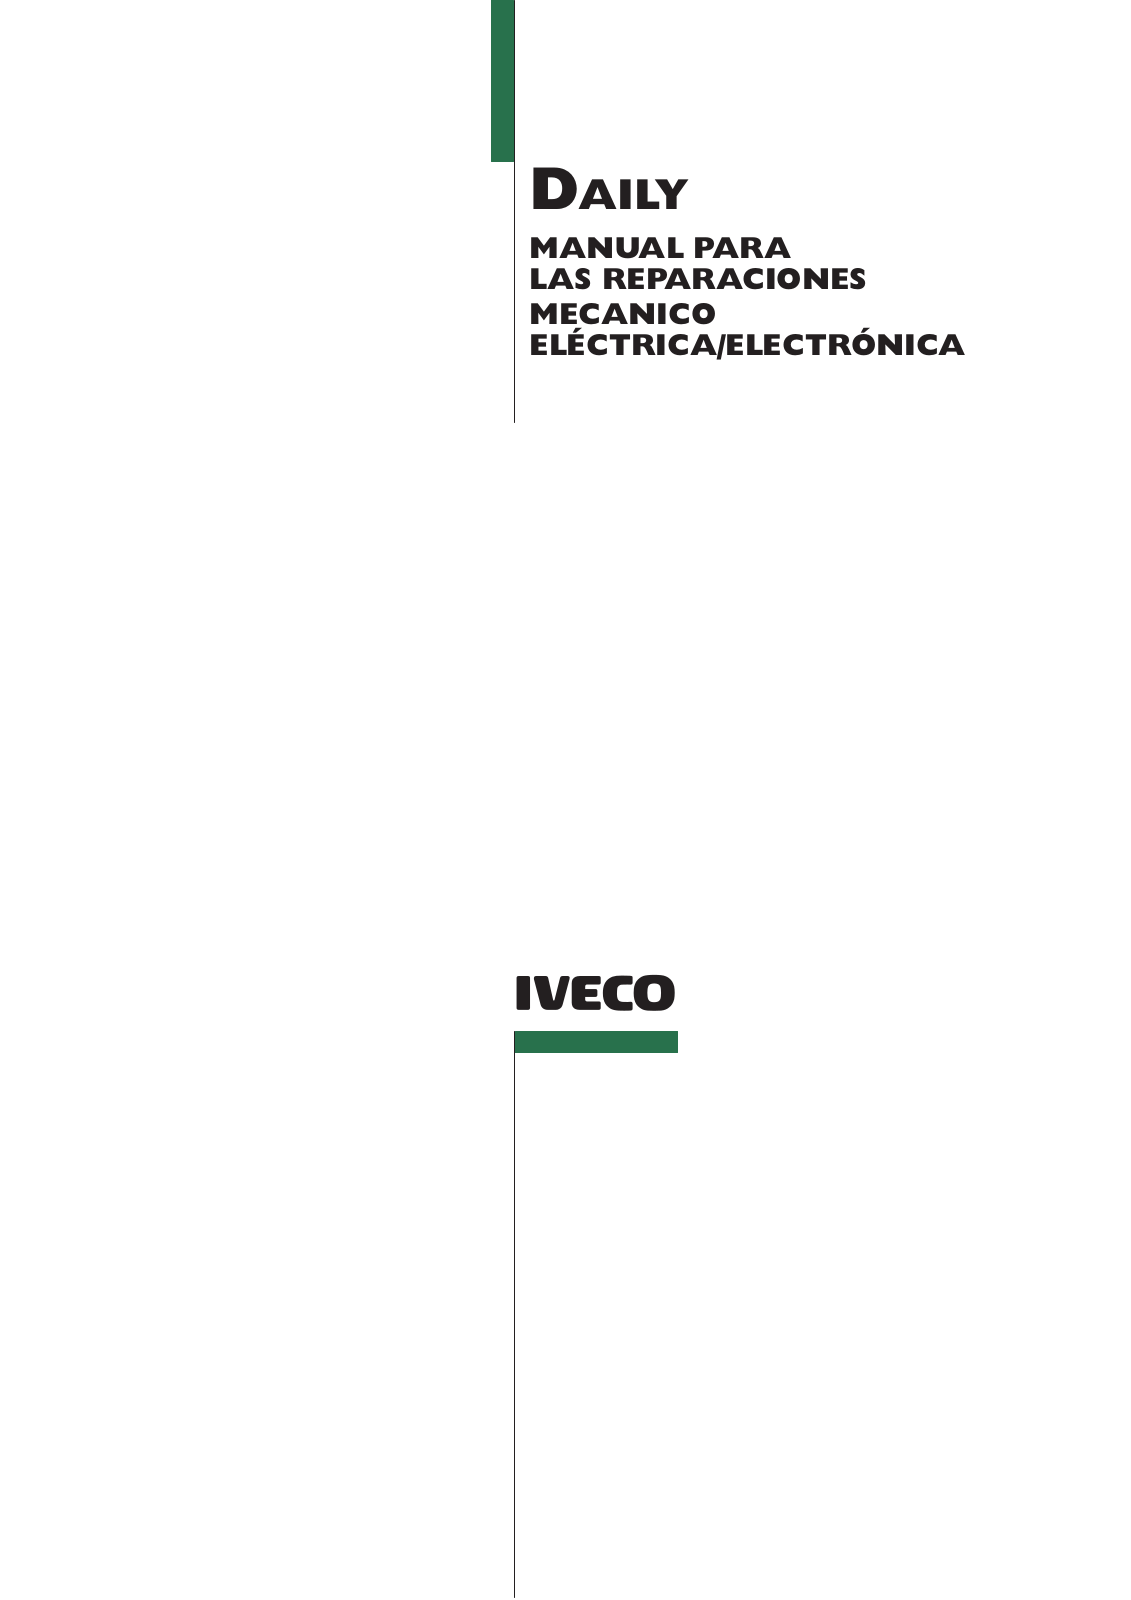 Iveco Daily para las reparaciones mecanica, electrico, electronica Service Manual